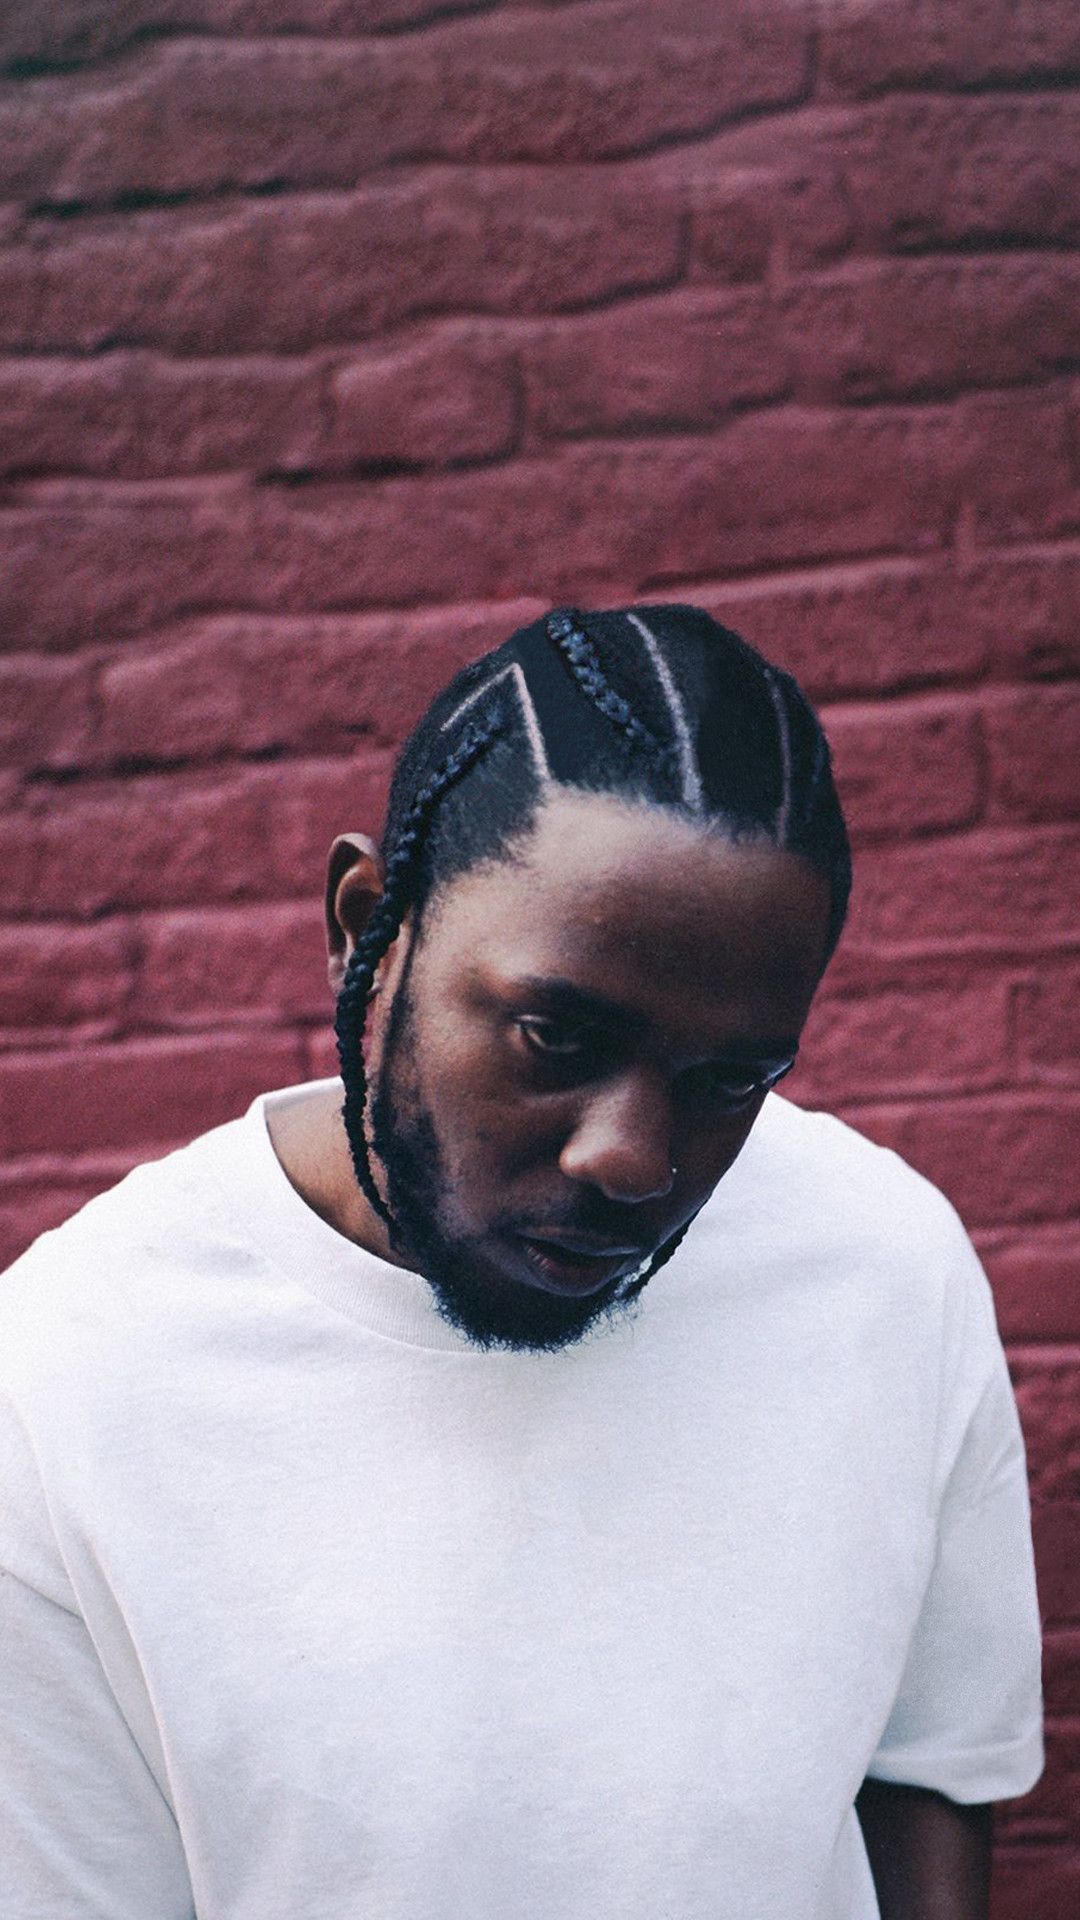 Kendrick Lamar Wallpapers